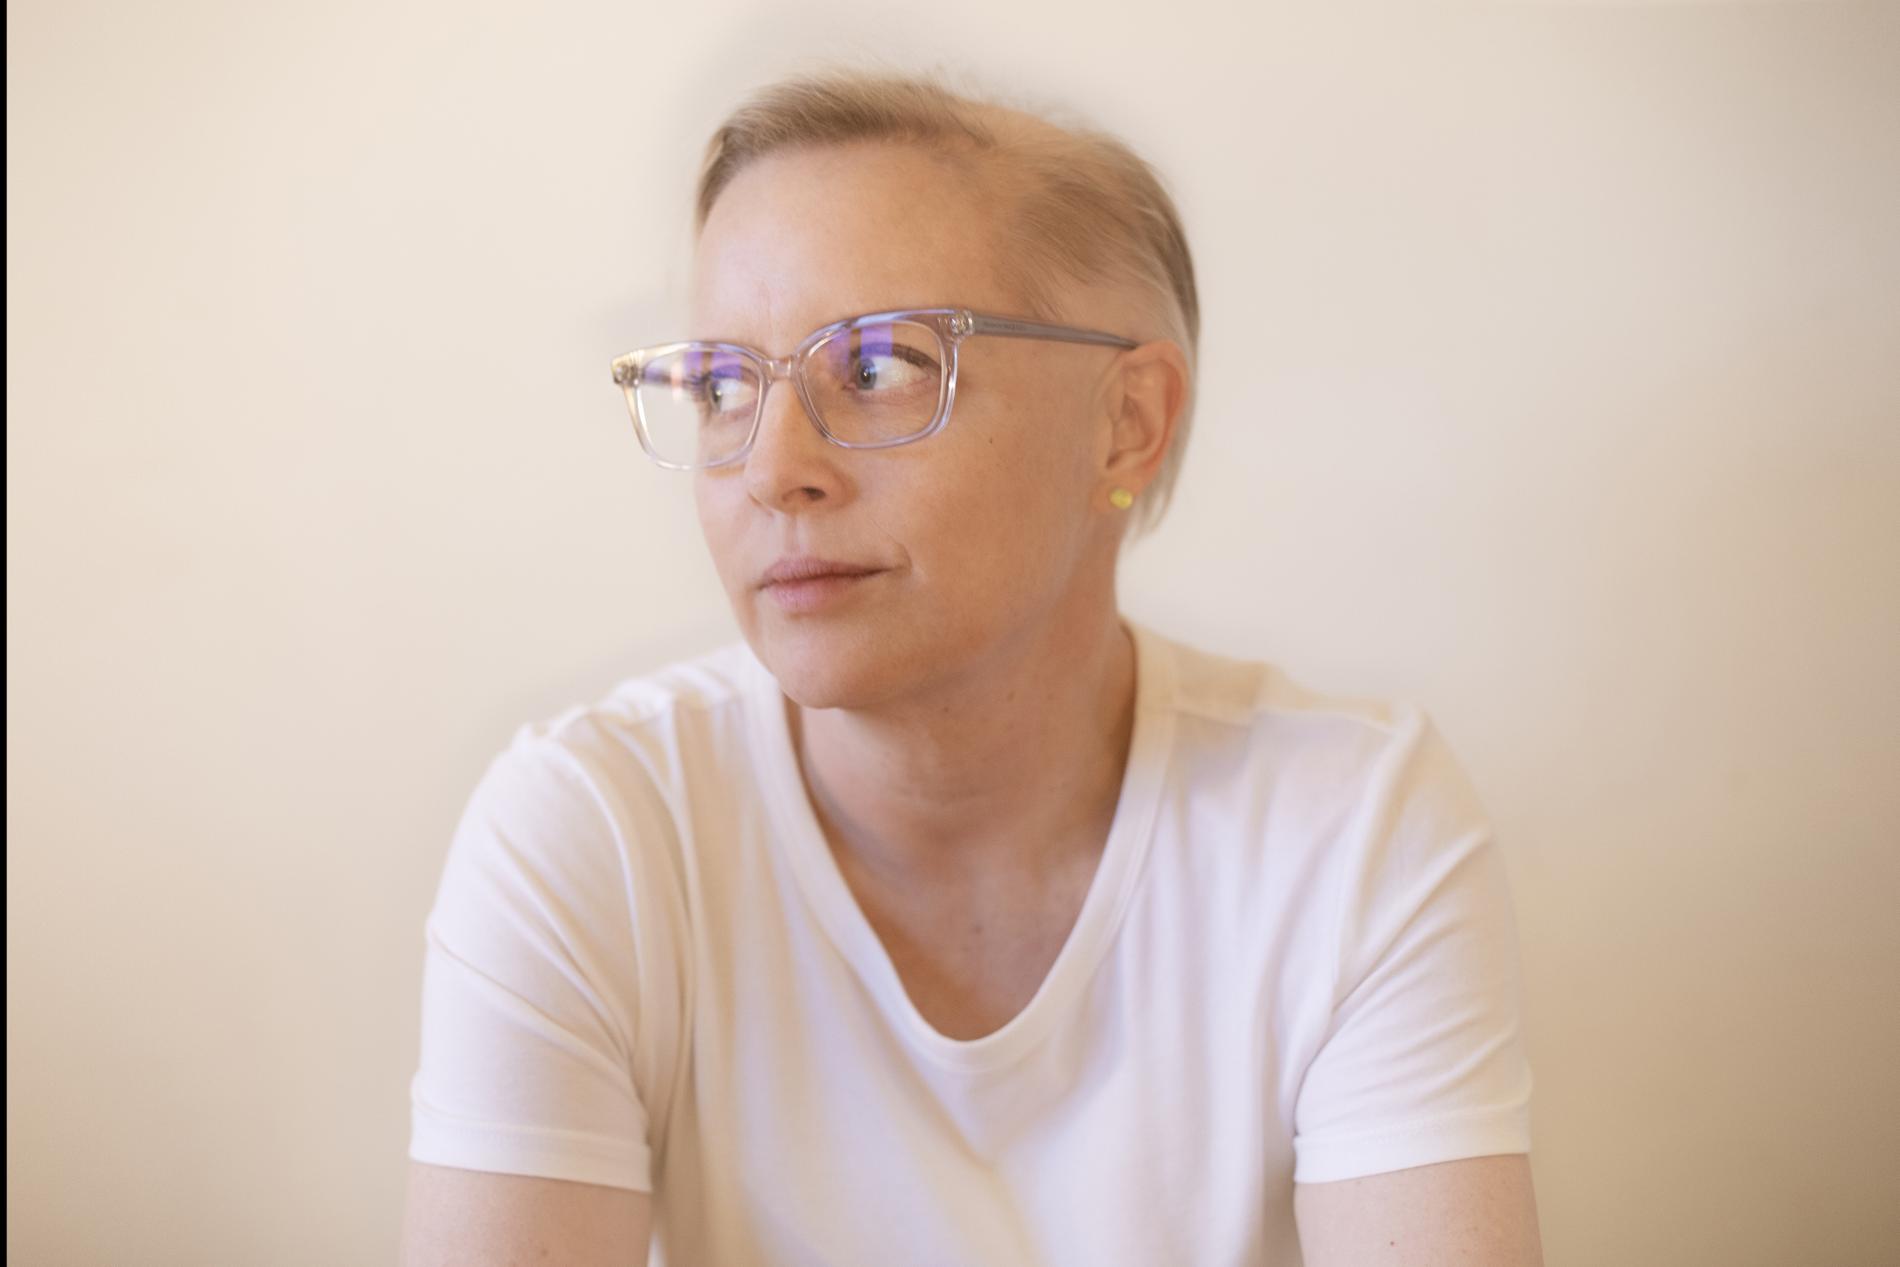 Anna Hallberg (född 1975) är poet och litteraturkritiker. Hon debuterade med ”Friktion” 2001 och har tilldelats ett flertal priser, bland annat Gerard Bonniers lyrikpris 2021, samt nominerats två gånger till Nordiska rådets litteraturpris. Hon är nu aktuell med ”Yra, vakna! En solskenskoreografi”.